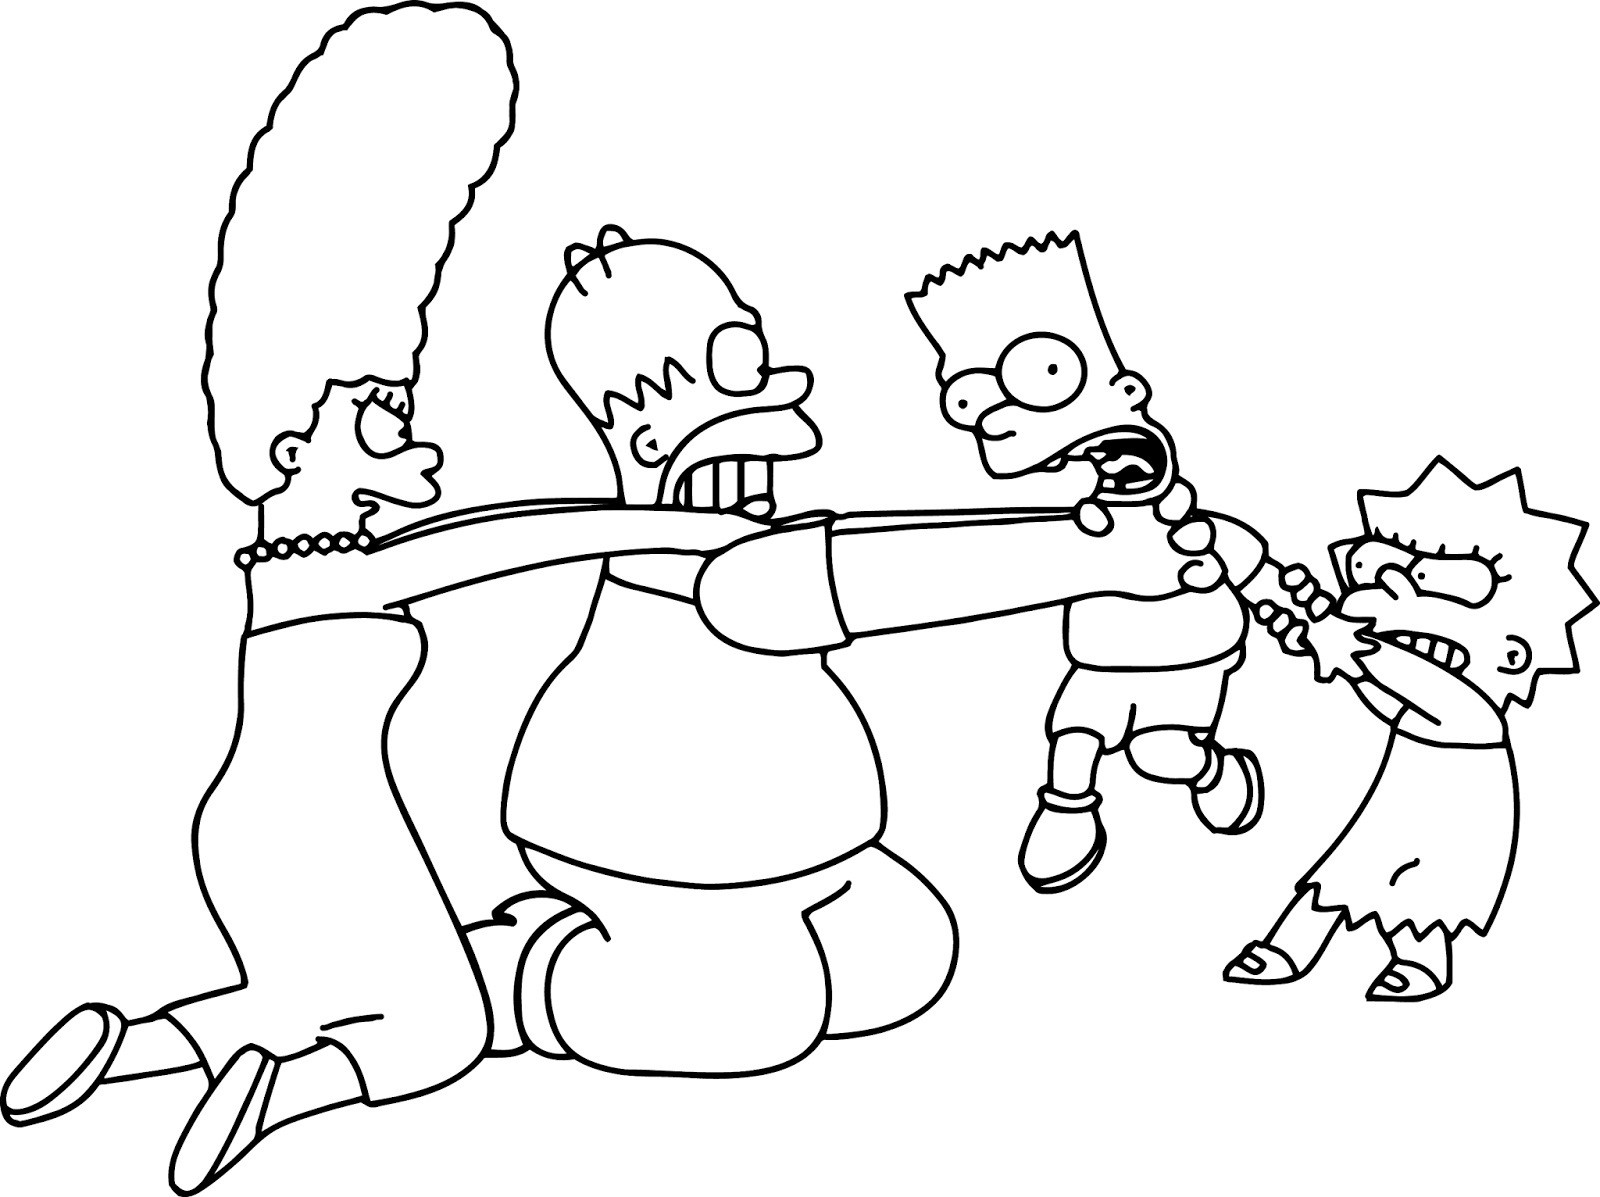 Simpsons Ausmalbilder
 Malvorlagen fur kinder Ausmalbilder Die Simpsons